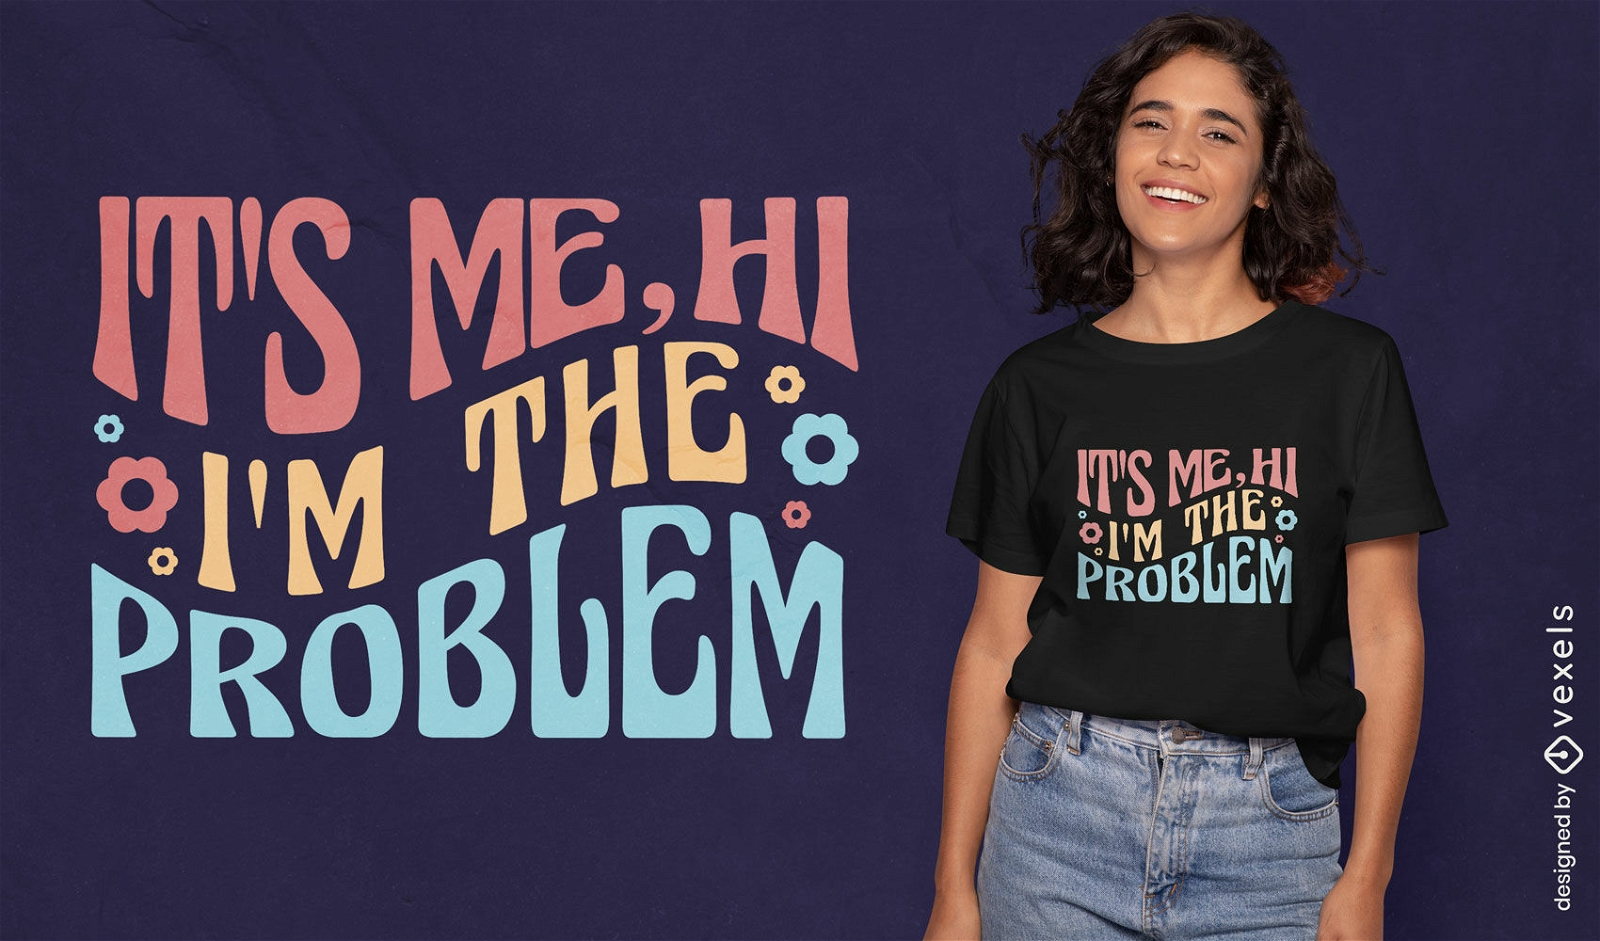 Ich bin der starke Zitat-T-Shirt Entwurf des Problems